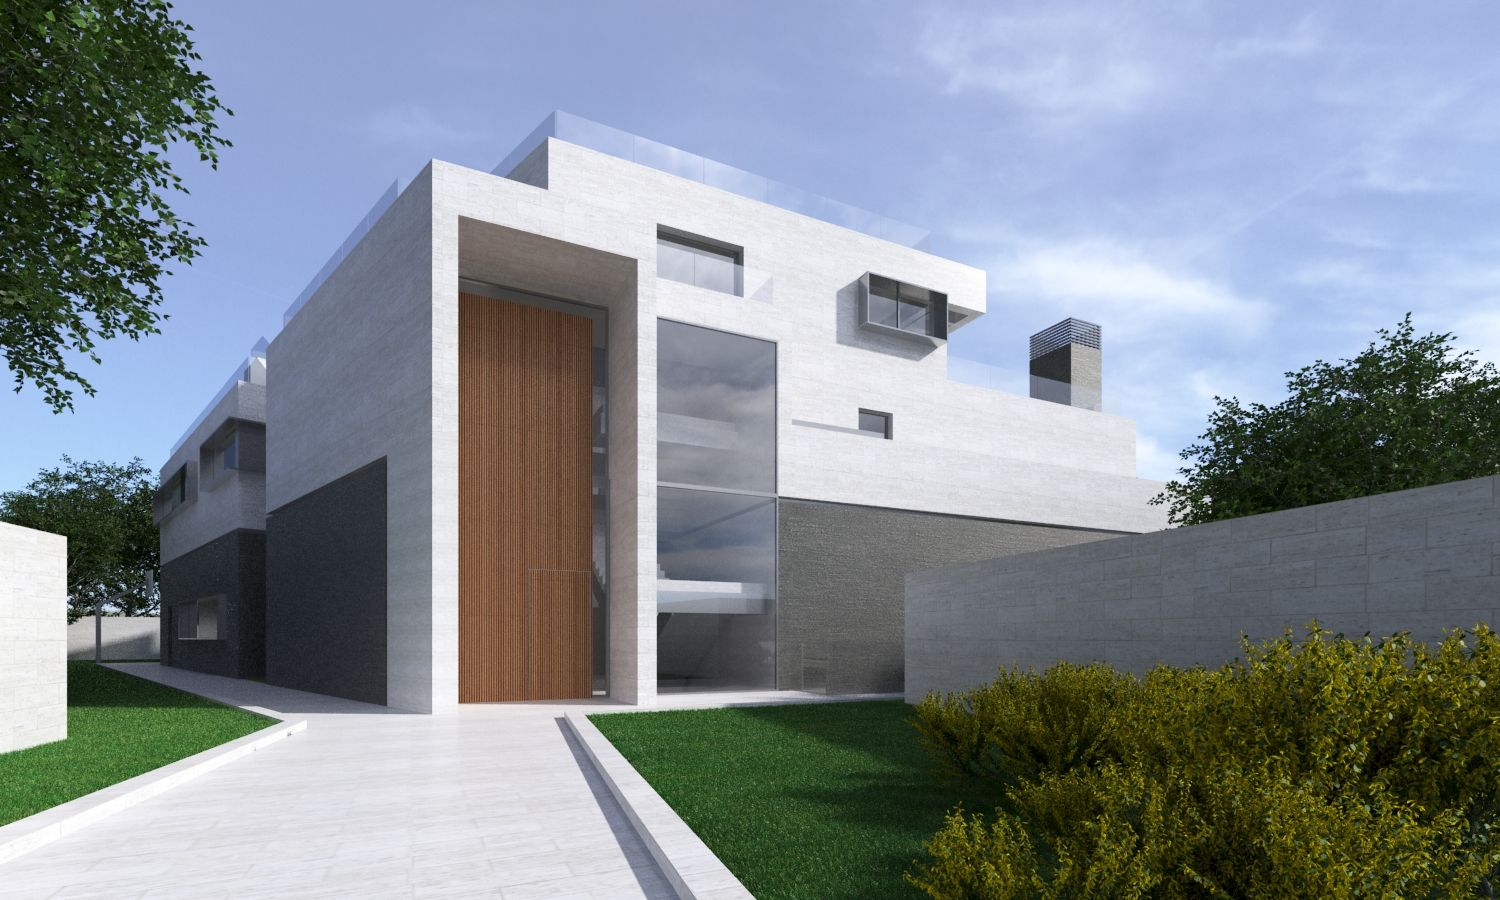 Vivienda unifamiliar en Madrid, ARQZONE 3D+Design Studio ARQZONE 3D+Design Studio Einfamilienhaus Kalkstein